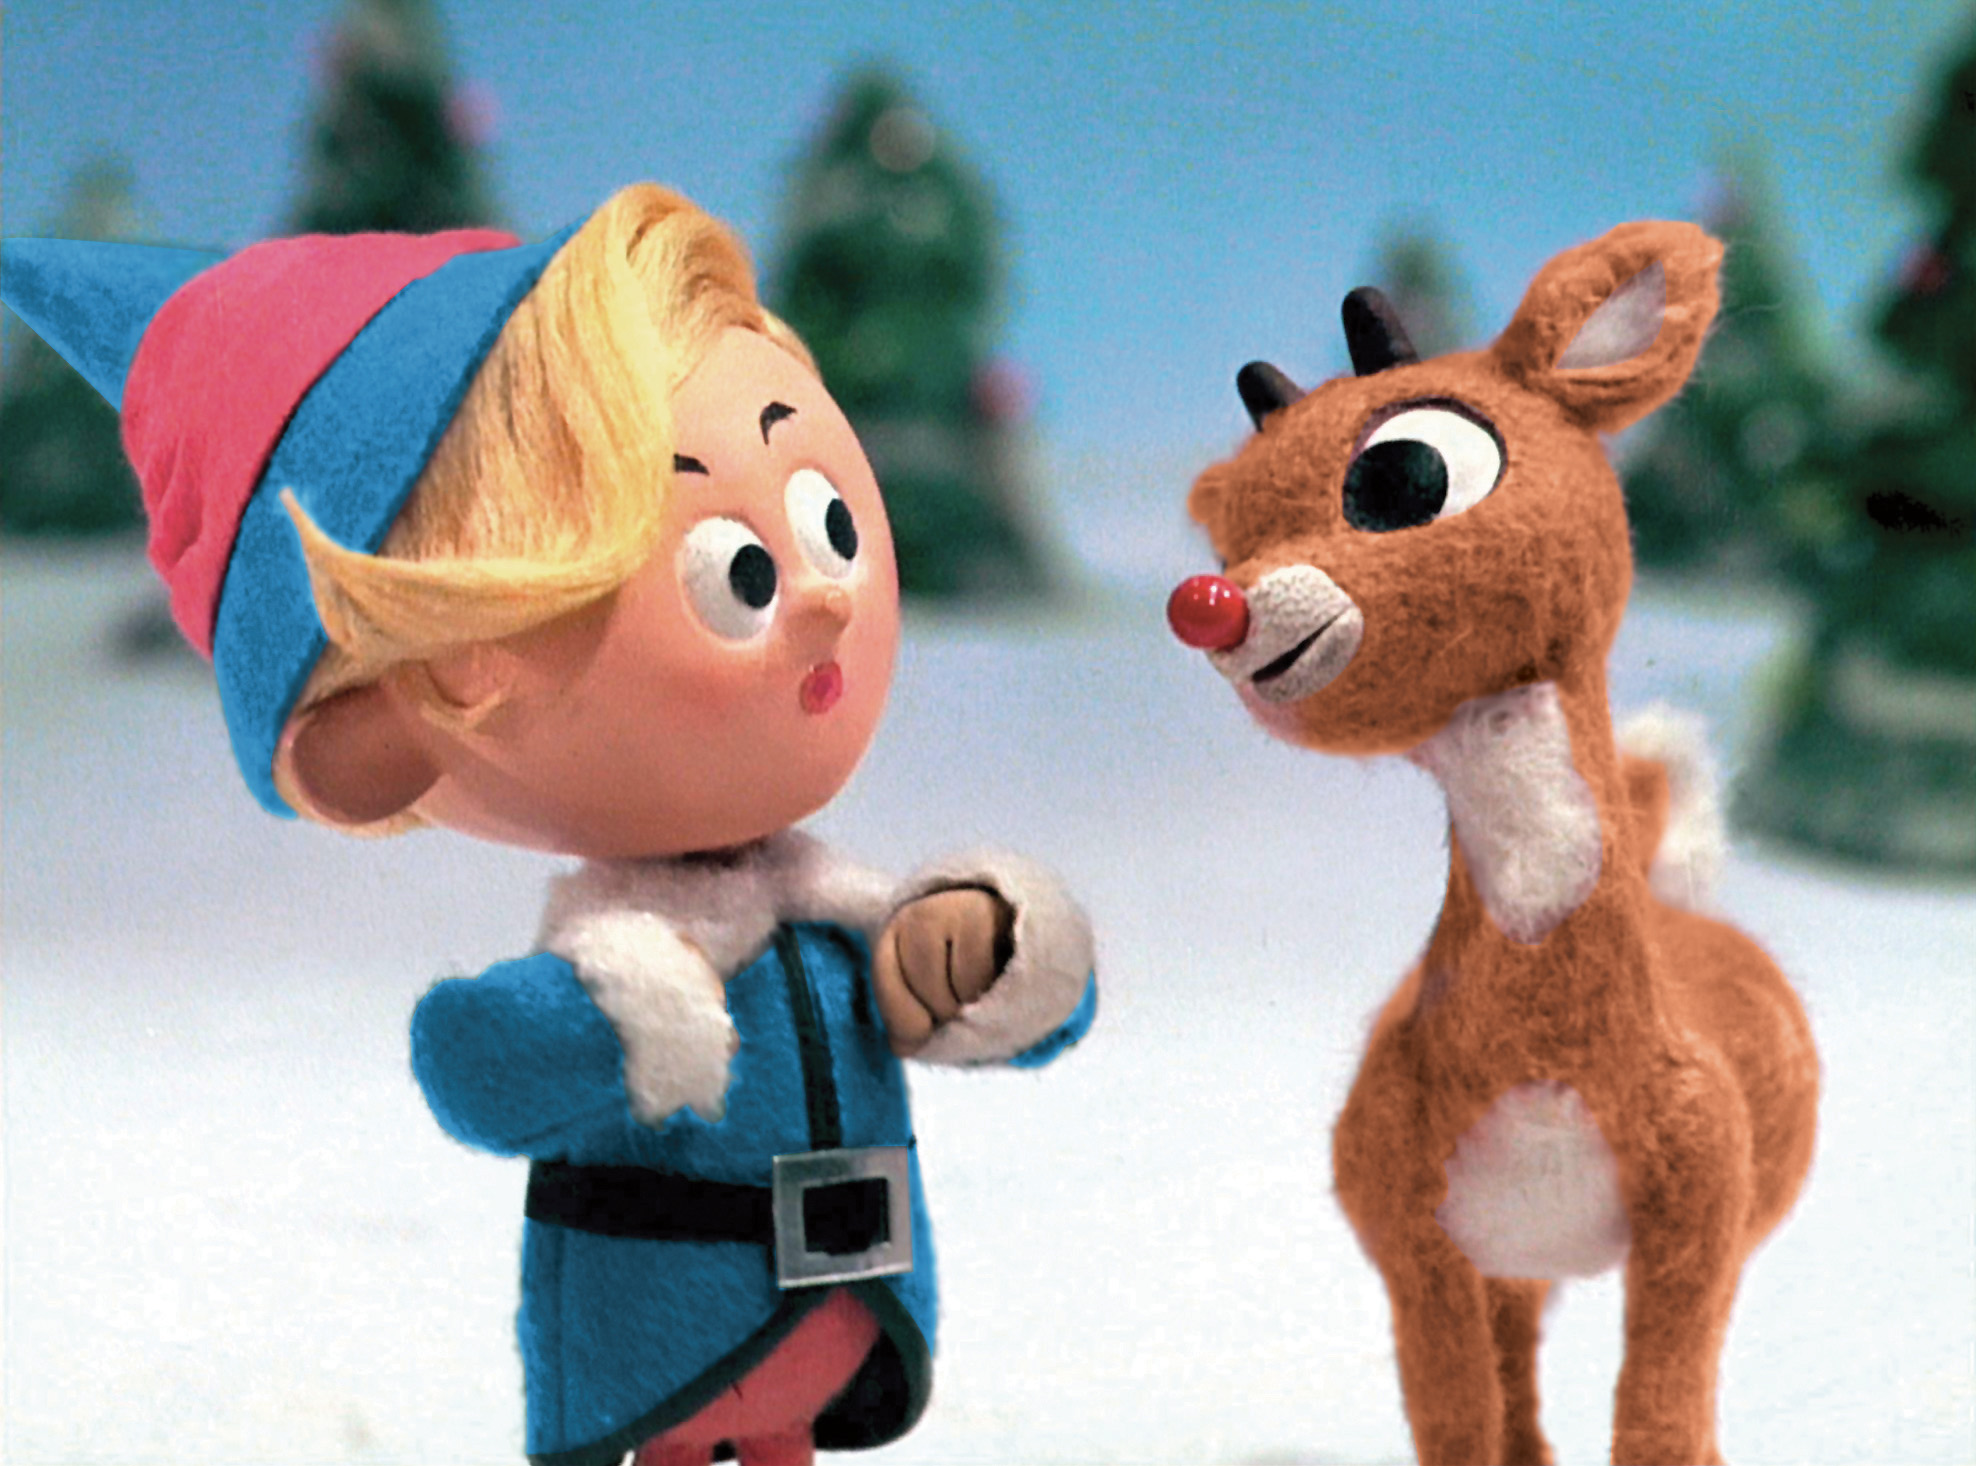 Hermey_the_elf_and_Rudolph.jpg